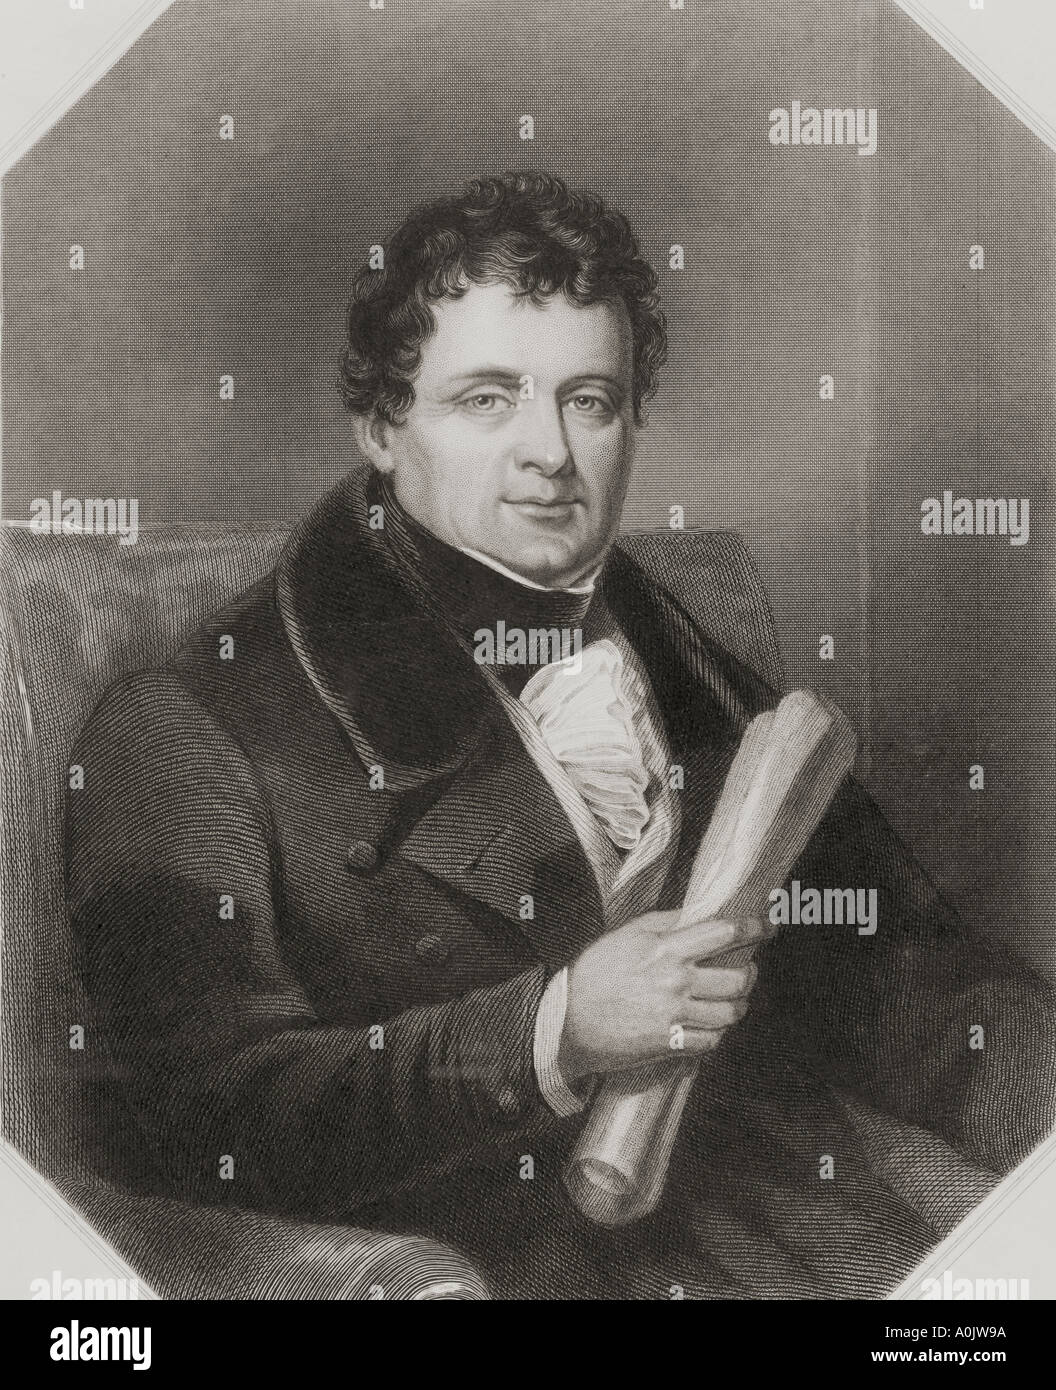 Daniel O'Connell, aka Der befreier oder die Befreier, 1775 - 1847. Irische politischer Führer. Stockfoto